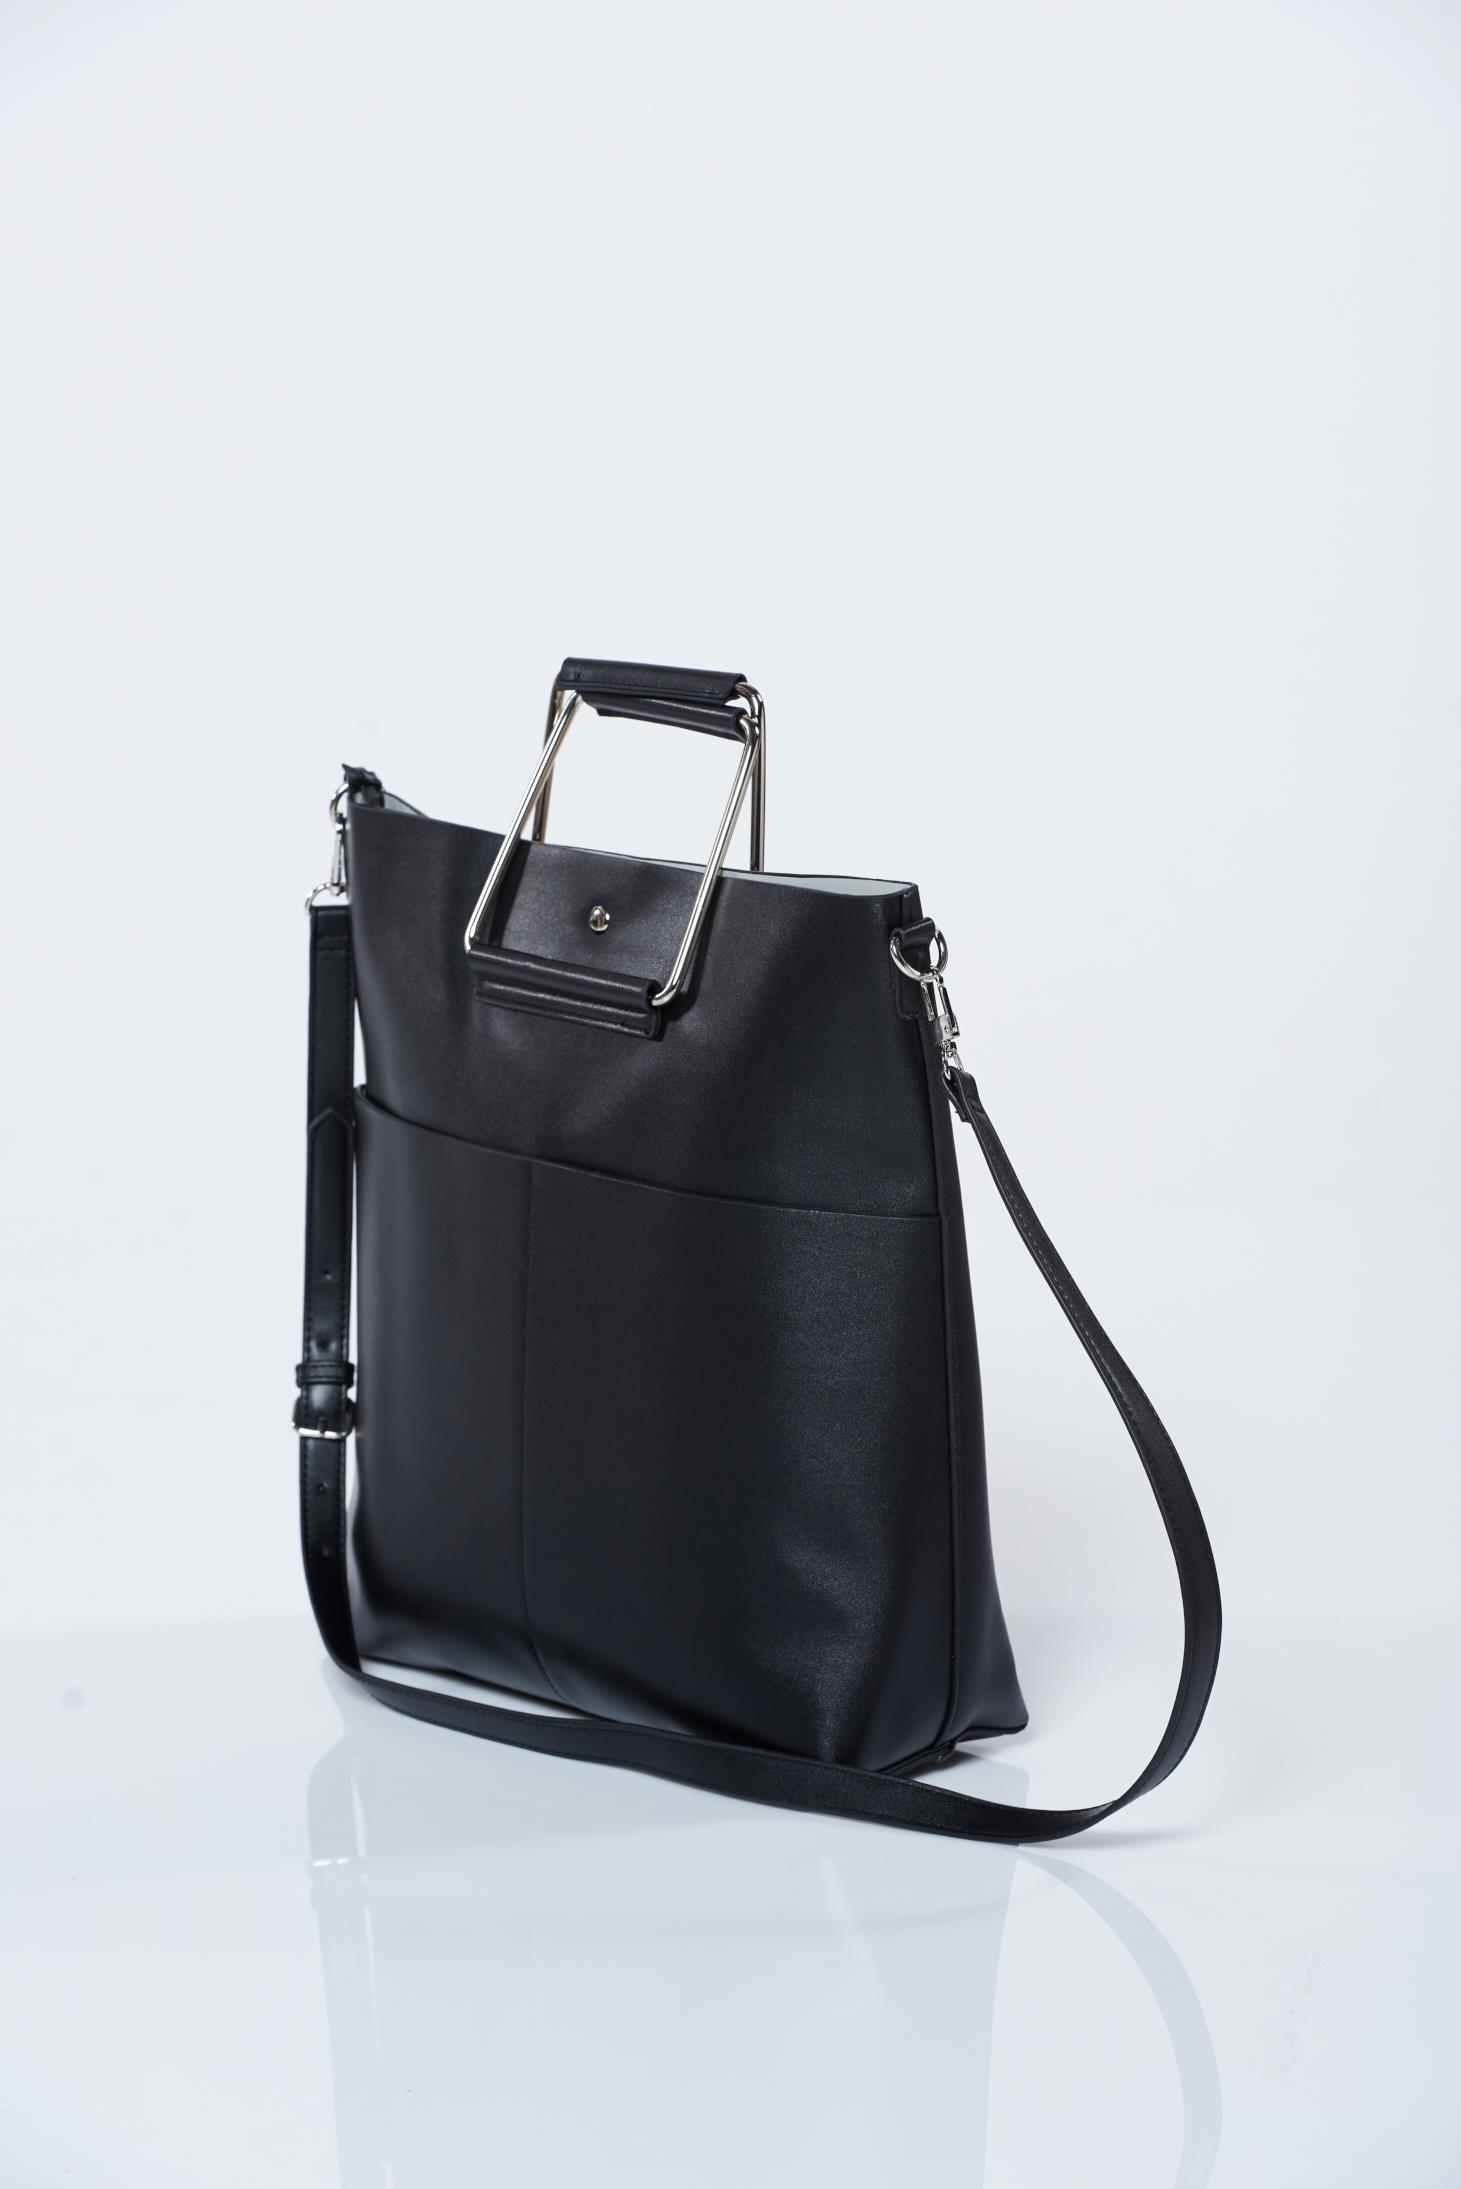 Top Secret black bag with long adjustable handle